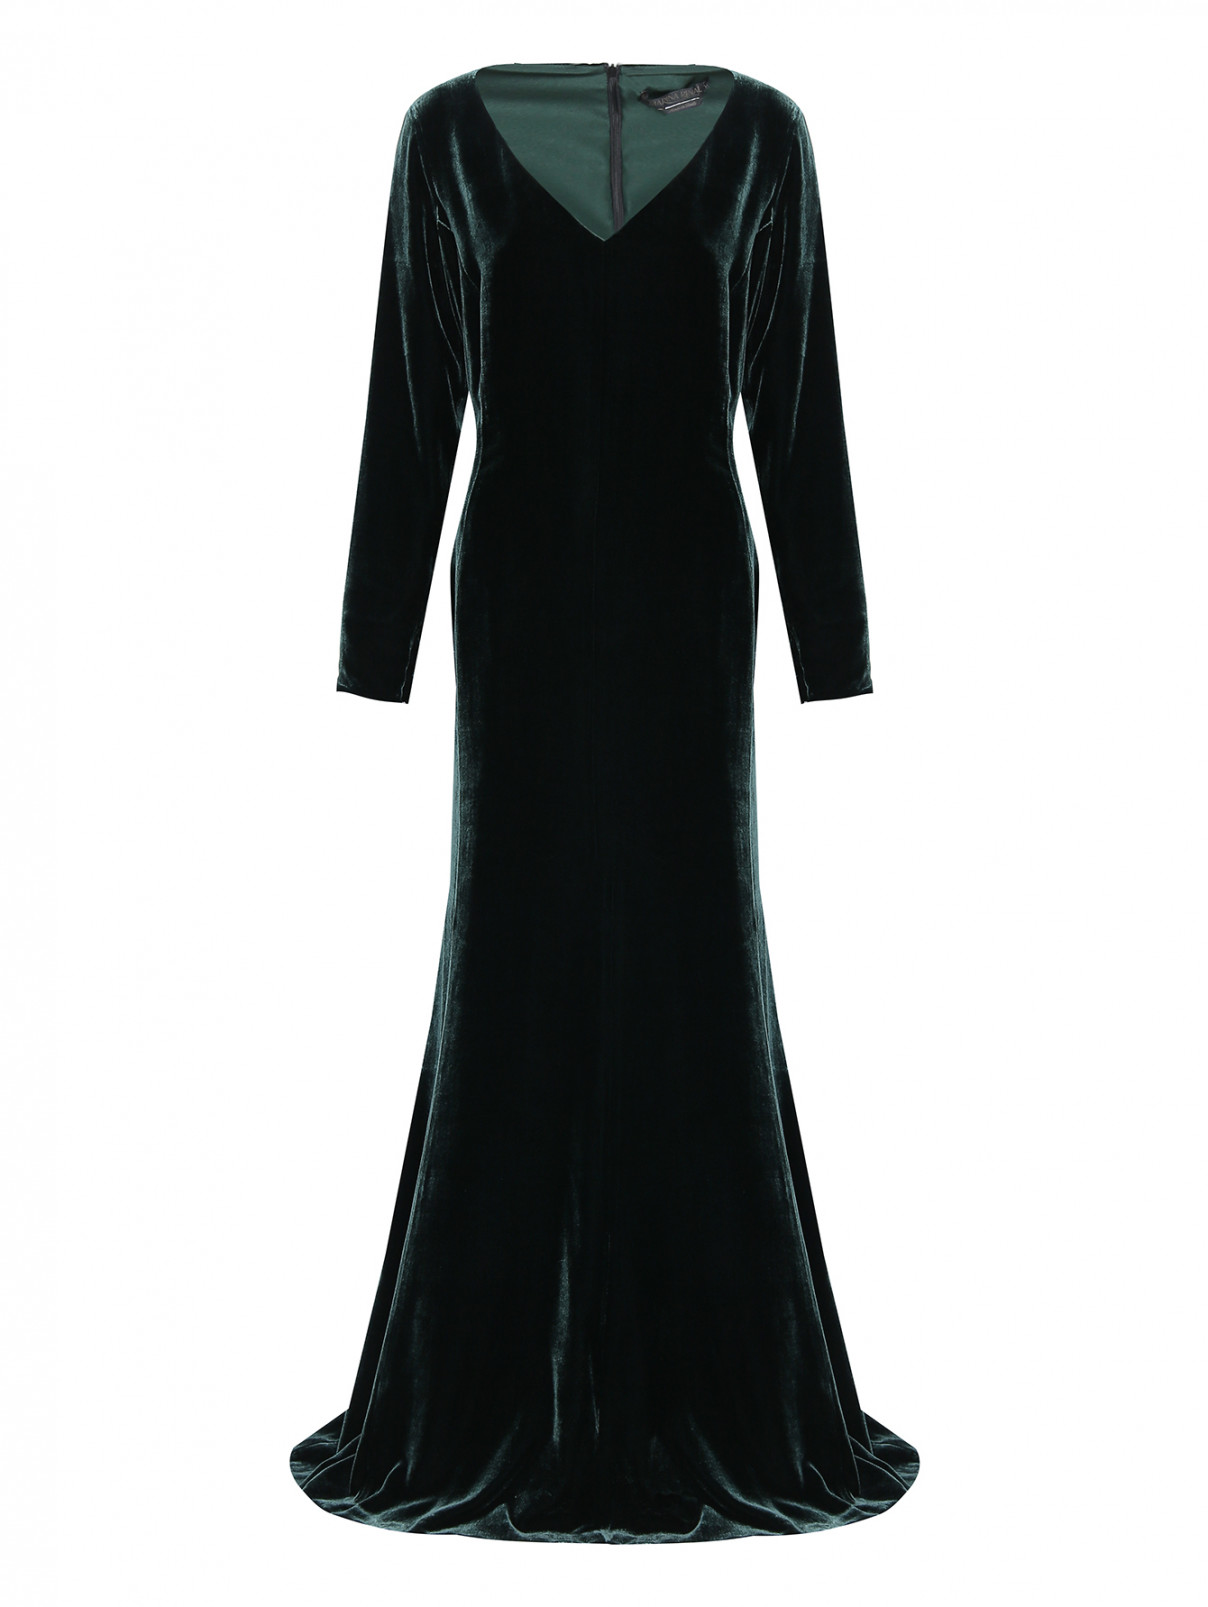 Платье-макси из вискозы, полуприталенное Marina Rinaldi  –  Общий вид  – Цвет:  Зеленый